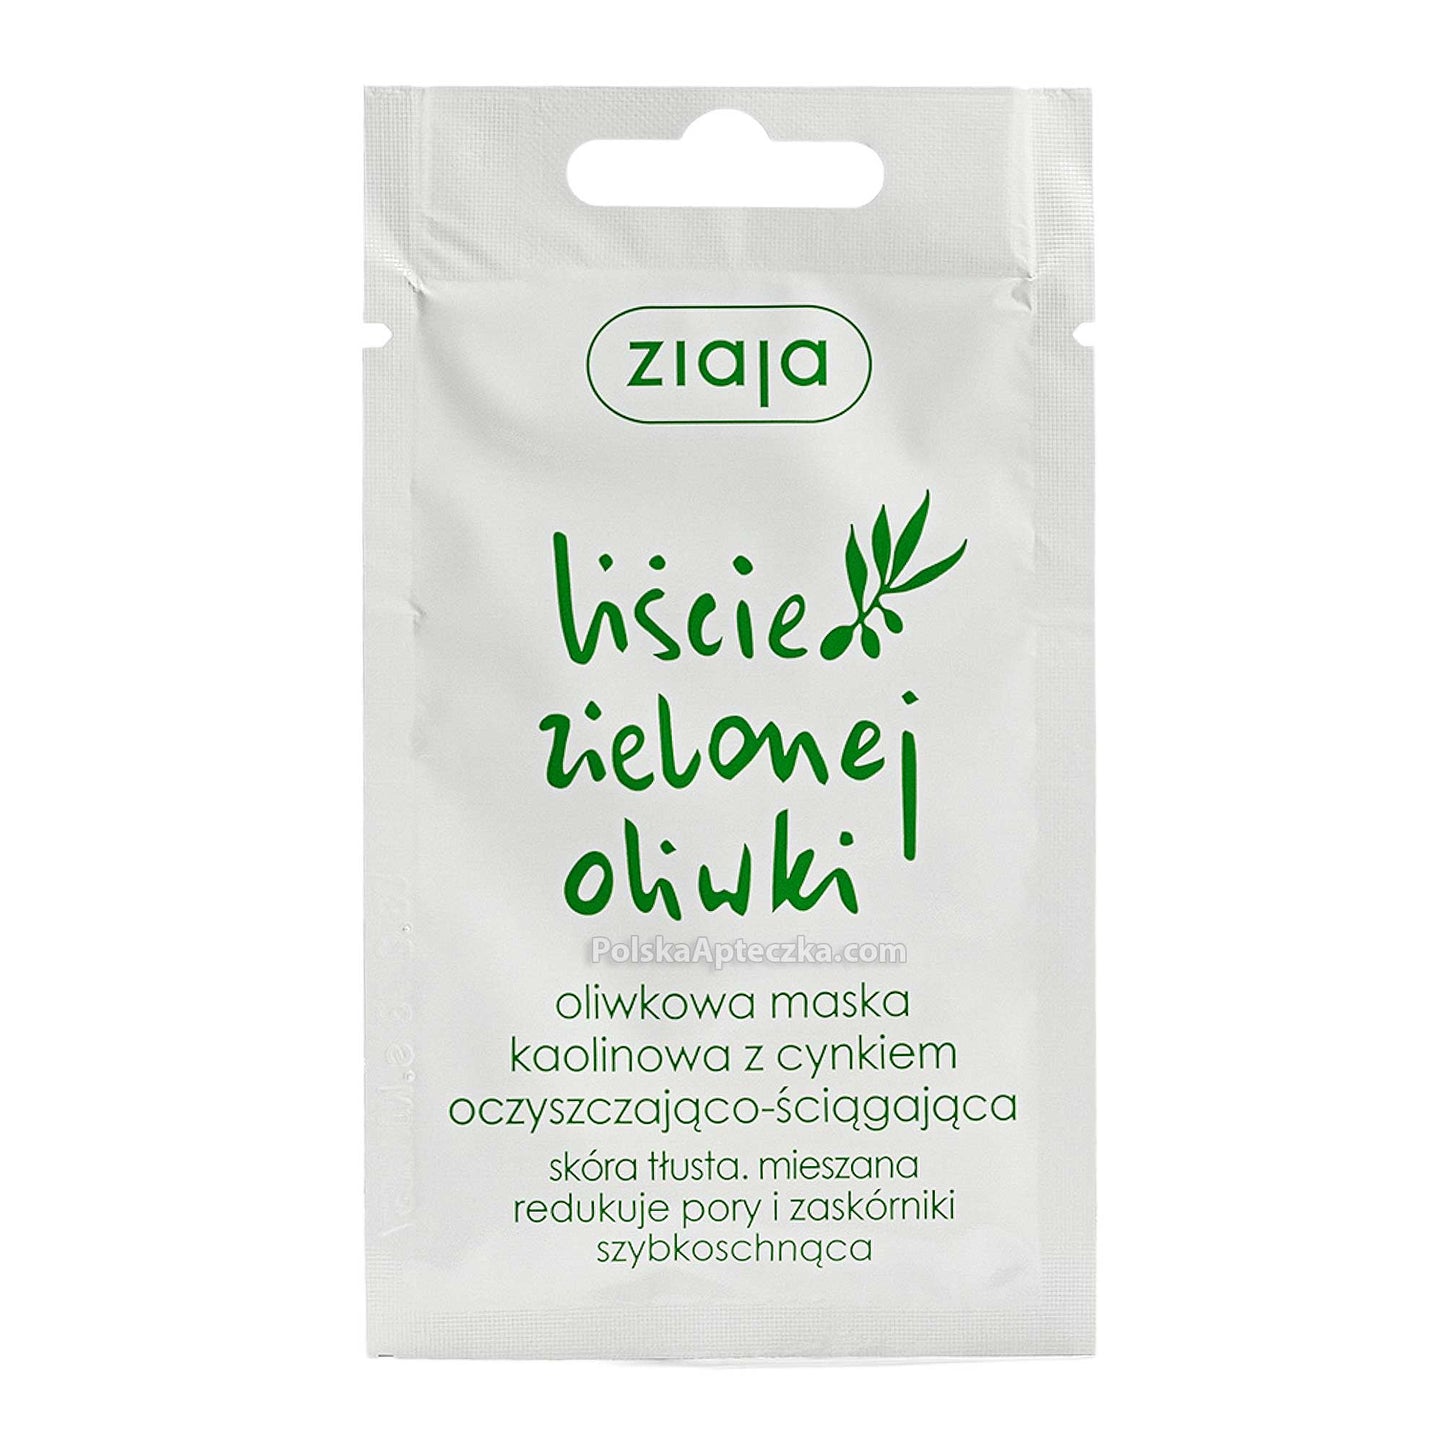 Ziaja, Liście Zielonej Oliwki Oliwkowa maska kaolinowa z cynkiem oczyszczjąco-ściągająca 7 ml